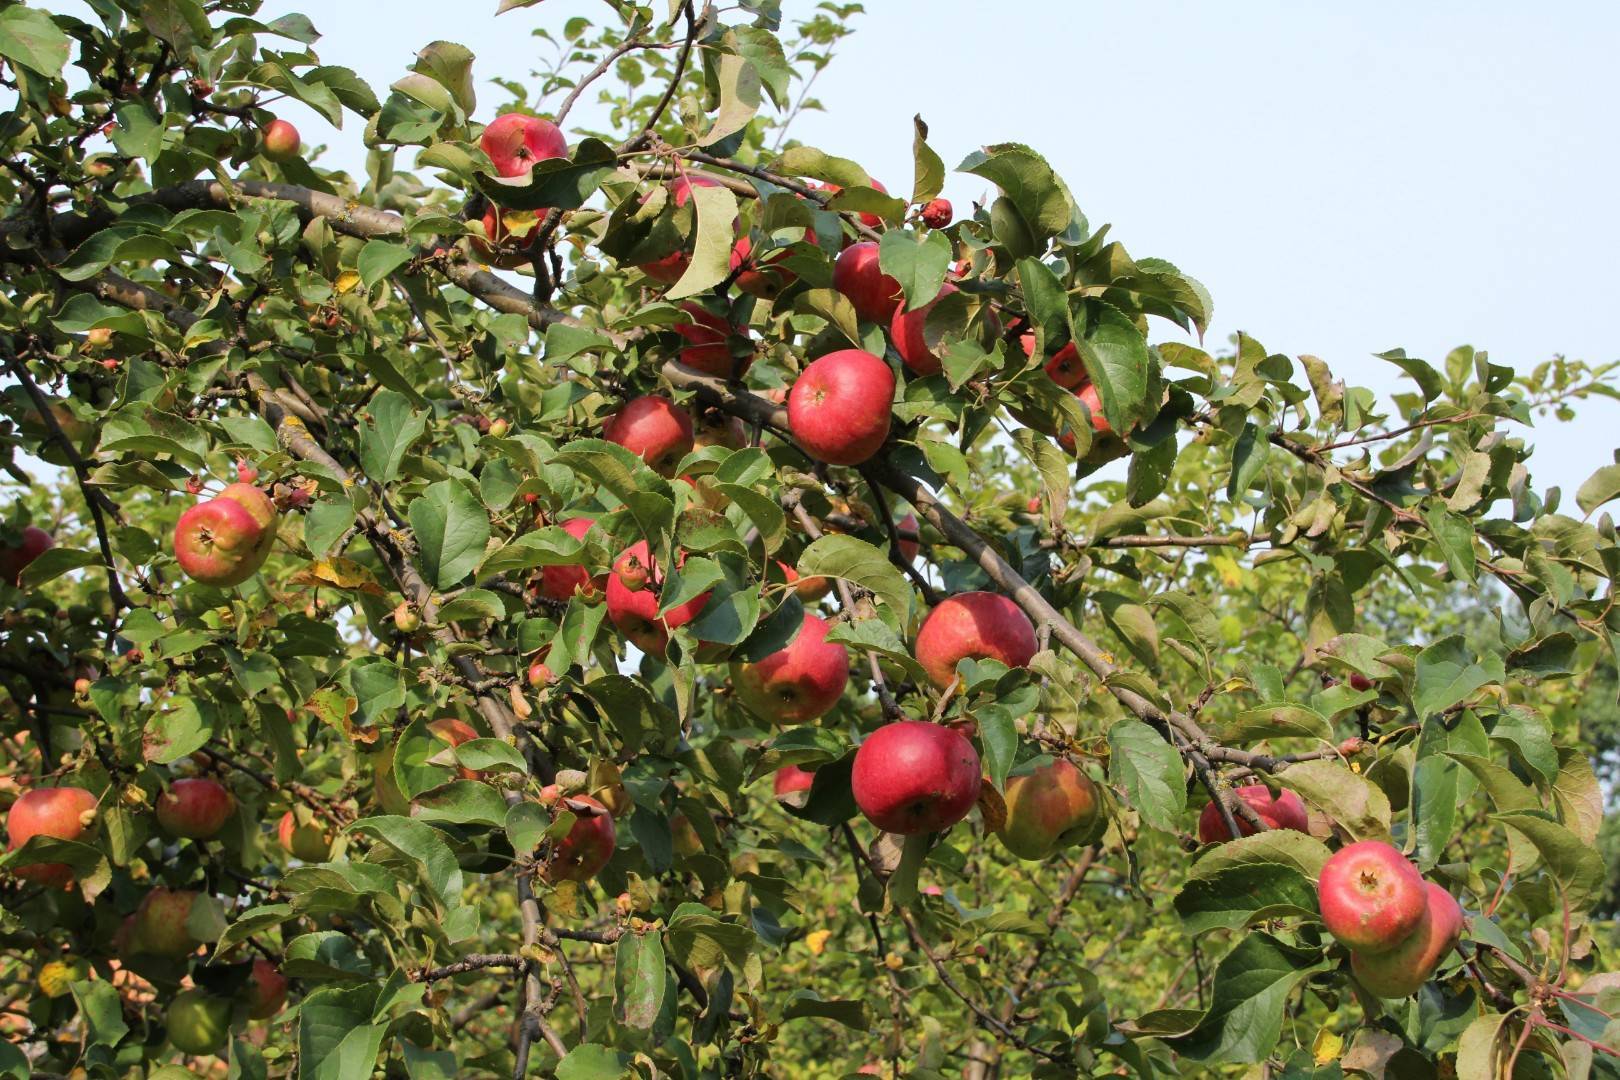 Описание сорта яблони первенец ртищева: фото яблок, важные характеристики, урожайность с дерева